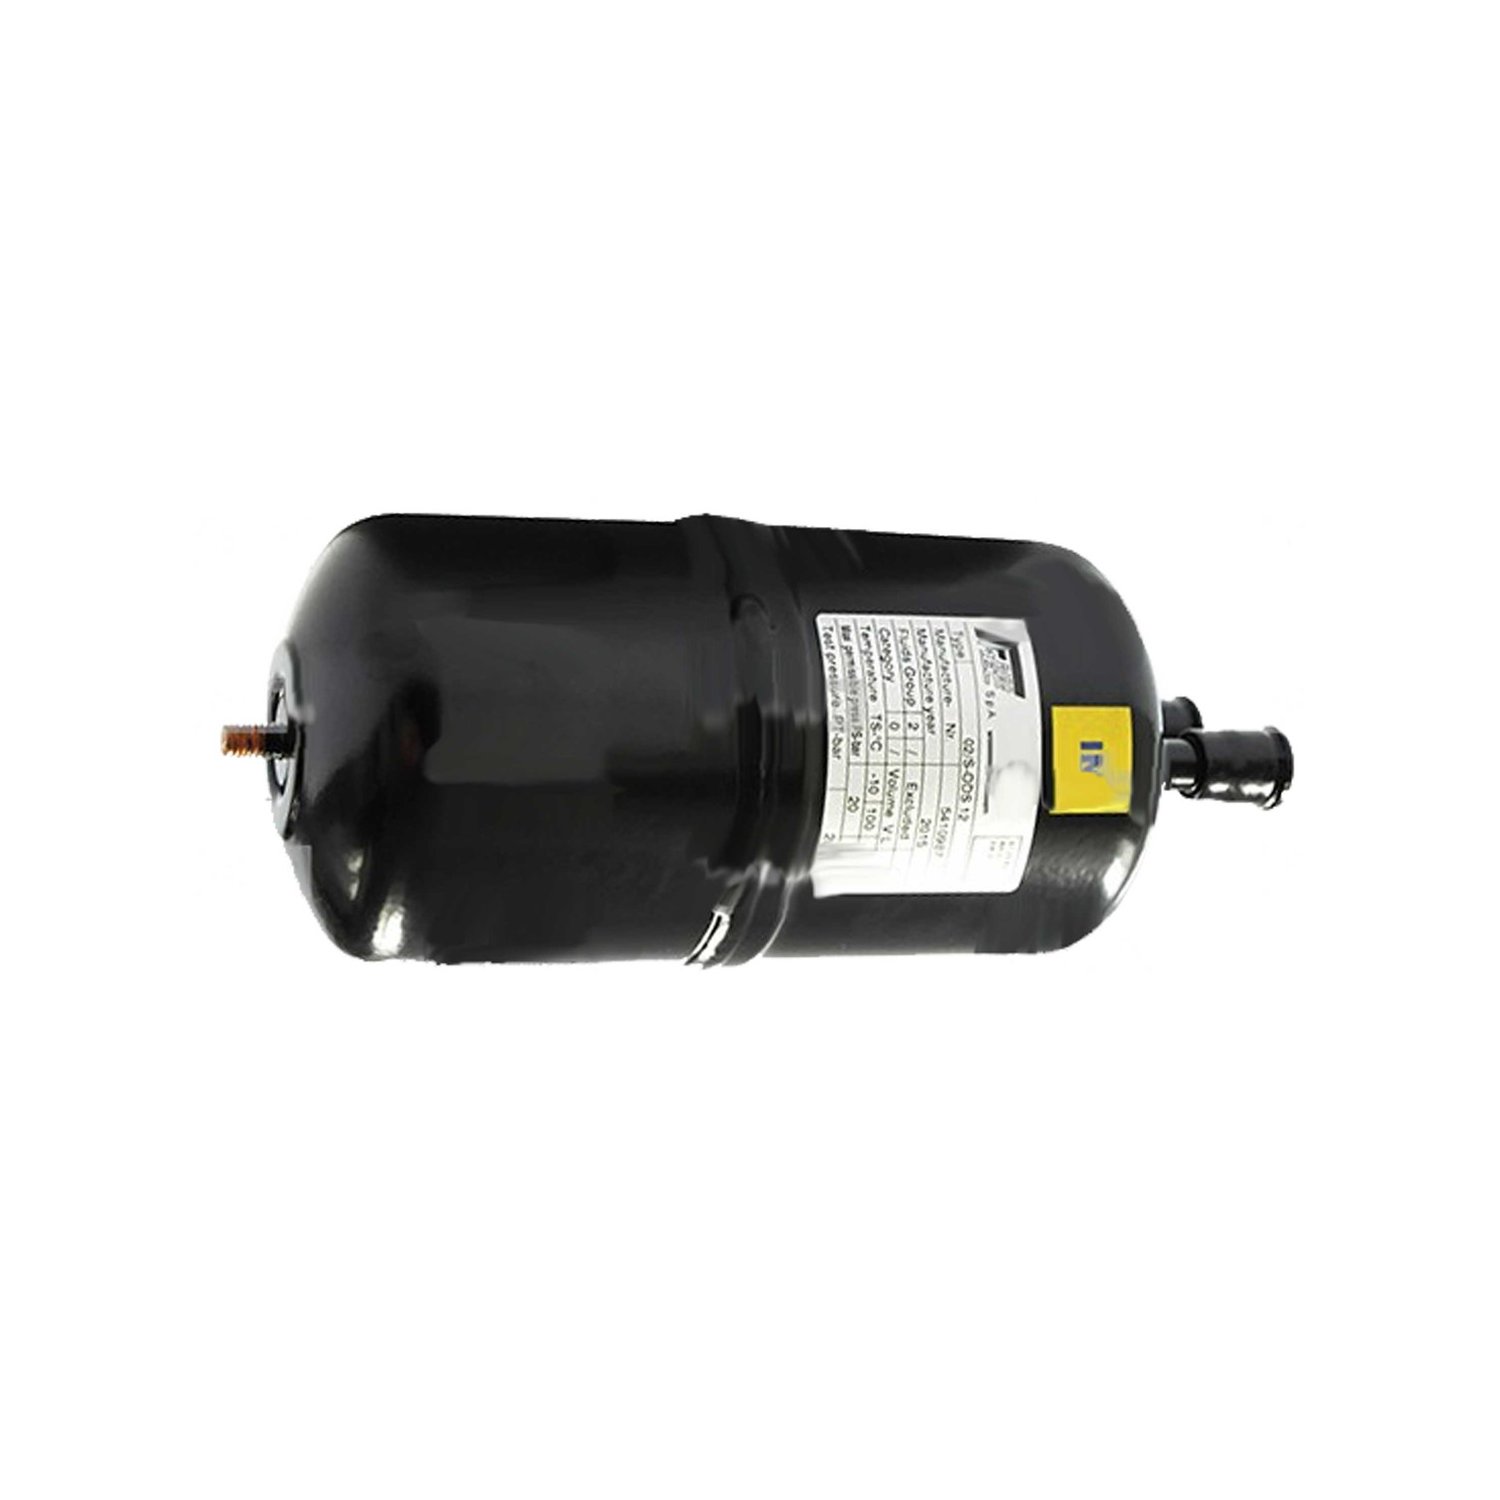 Separatore di liquidi Frigomec 02 / S 16mm, volume: 1,3 l, connessione: 16 mm